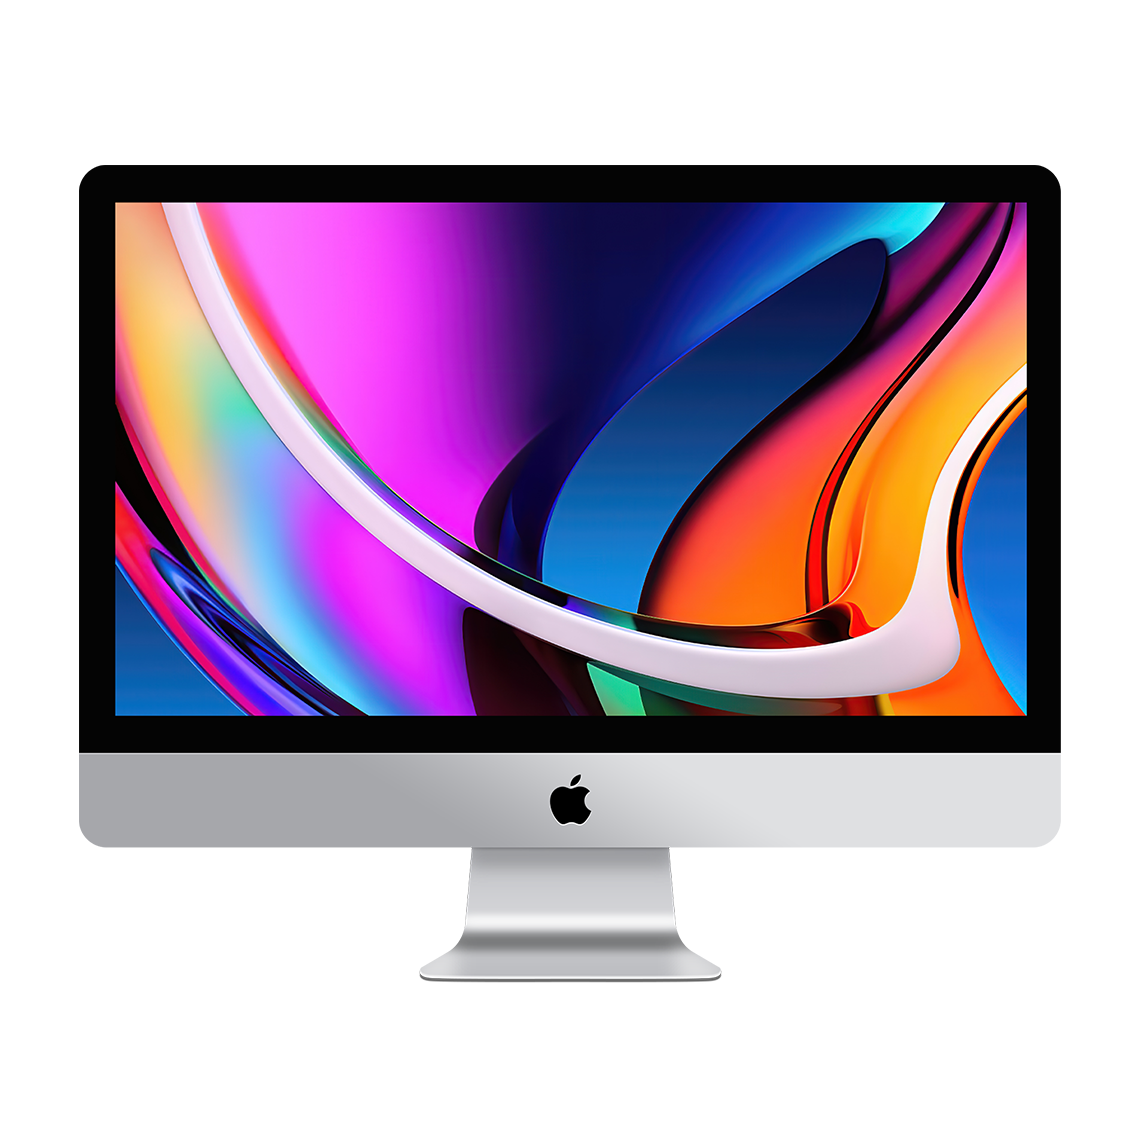 2020 iMac 27-inch 5K - Intel Core i7, 16GB, 4TB Flash, Radeon Pro 5500XT 8GB, Grade A